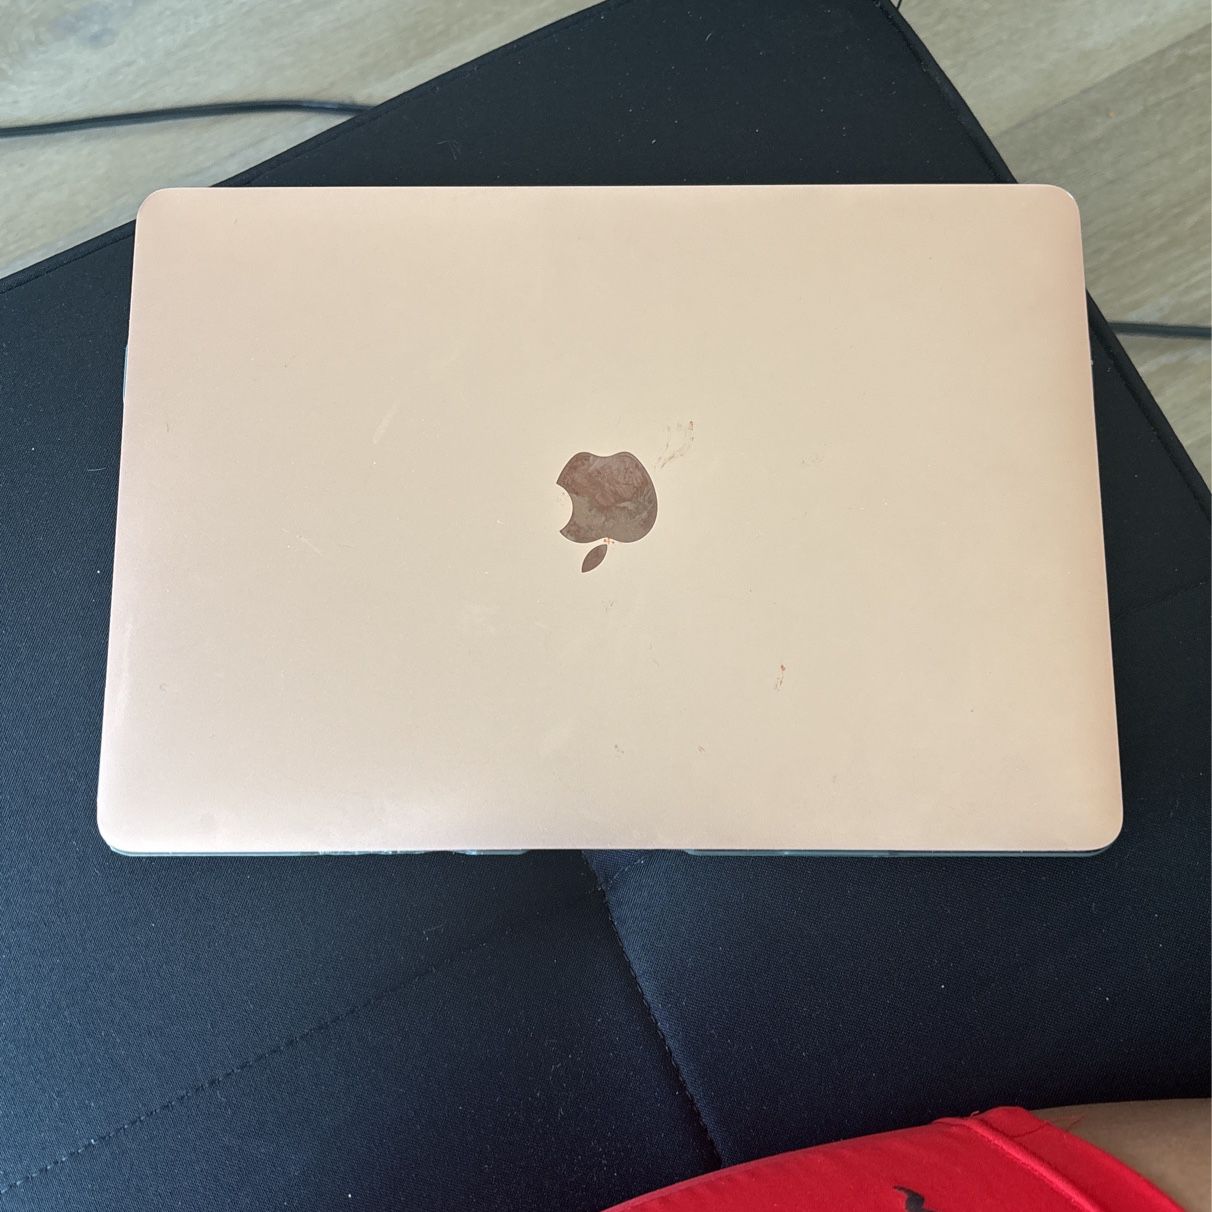 MacBook Air 2020 Rose Gold 